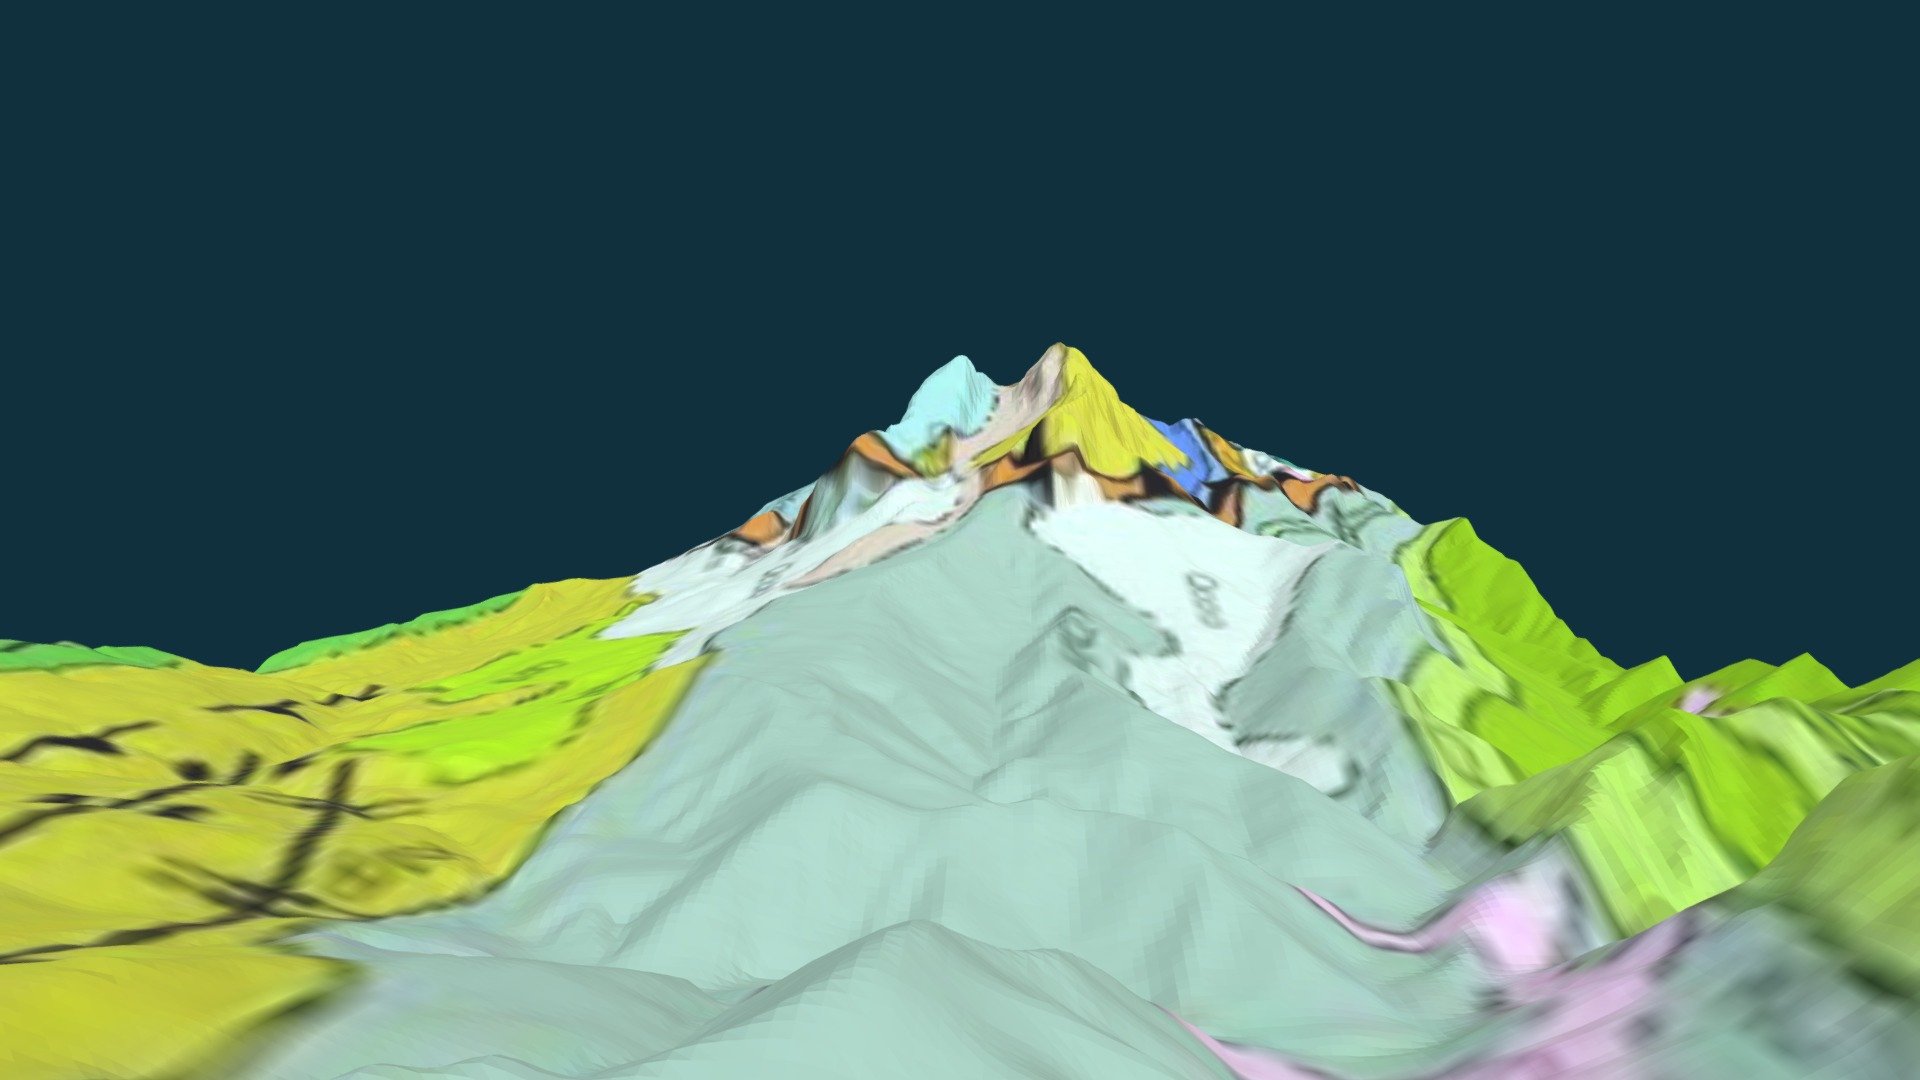 Model geològic 3D del Pedraforca